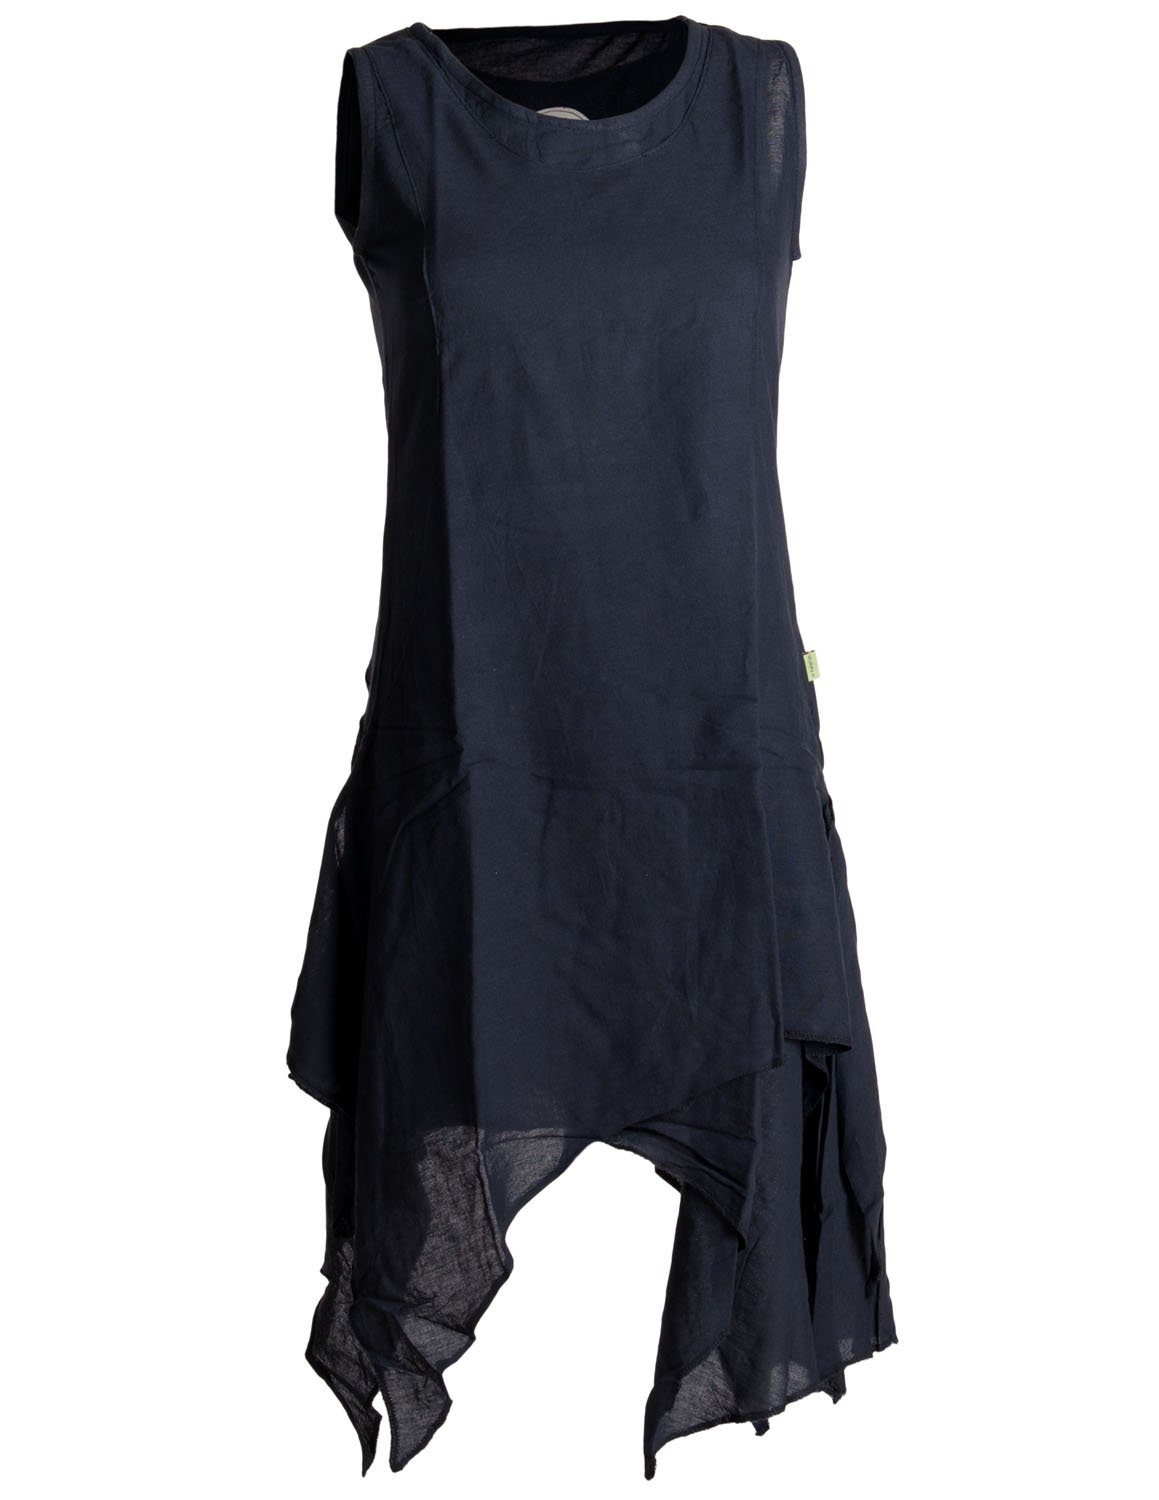 Vishes Sommerkleid Ärmelloses Lagenlook Kleid handgewebte Baumwolle Goa, Boho, Hippie Style schwarzuni